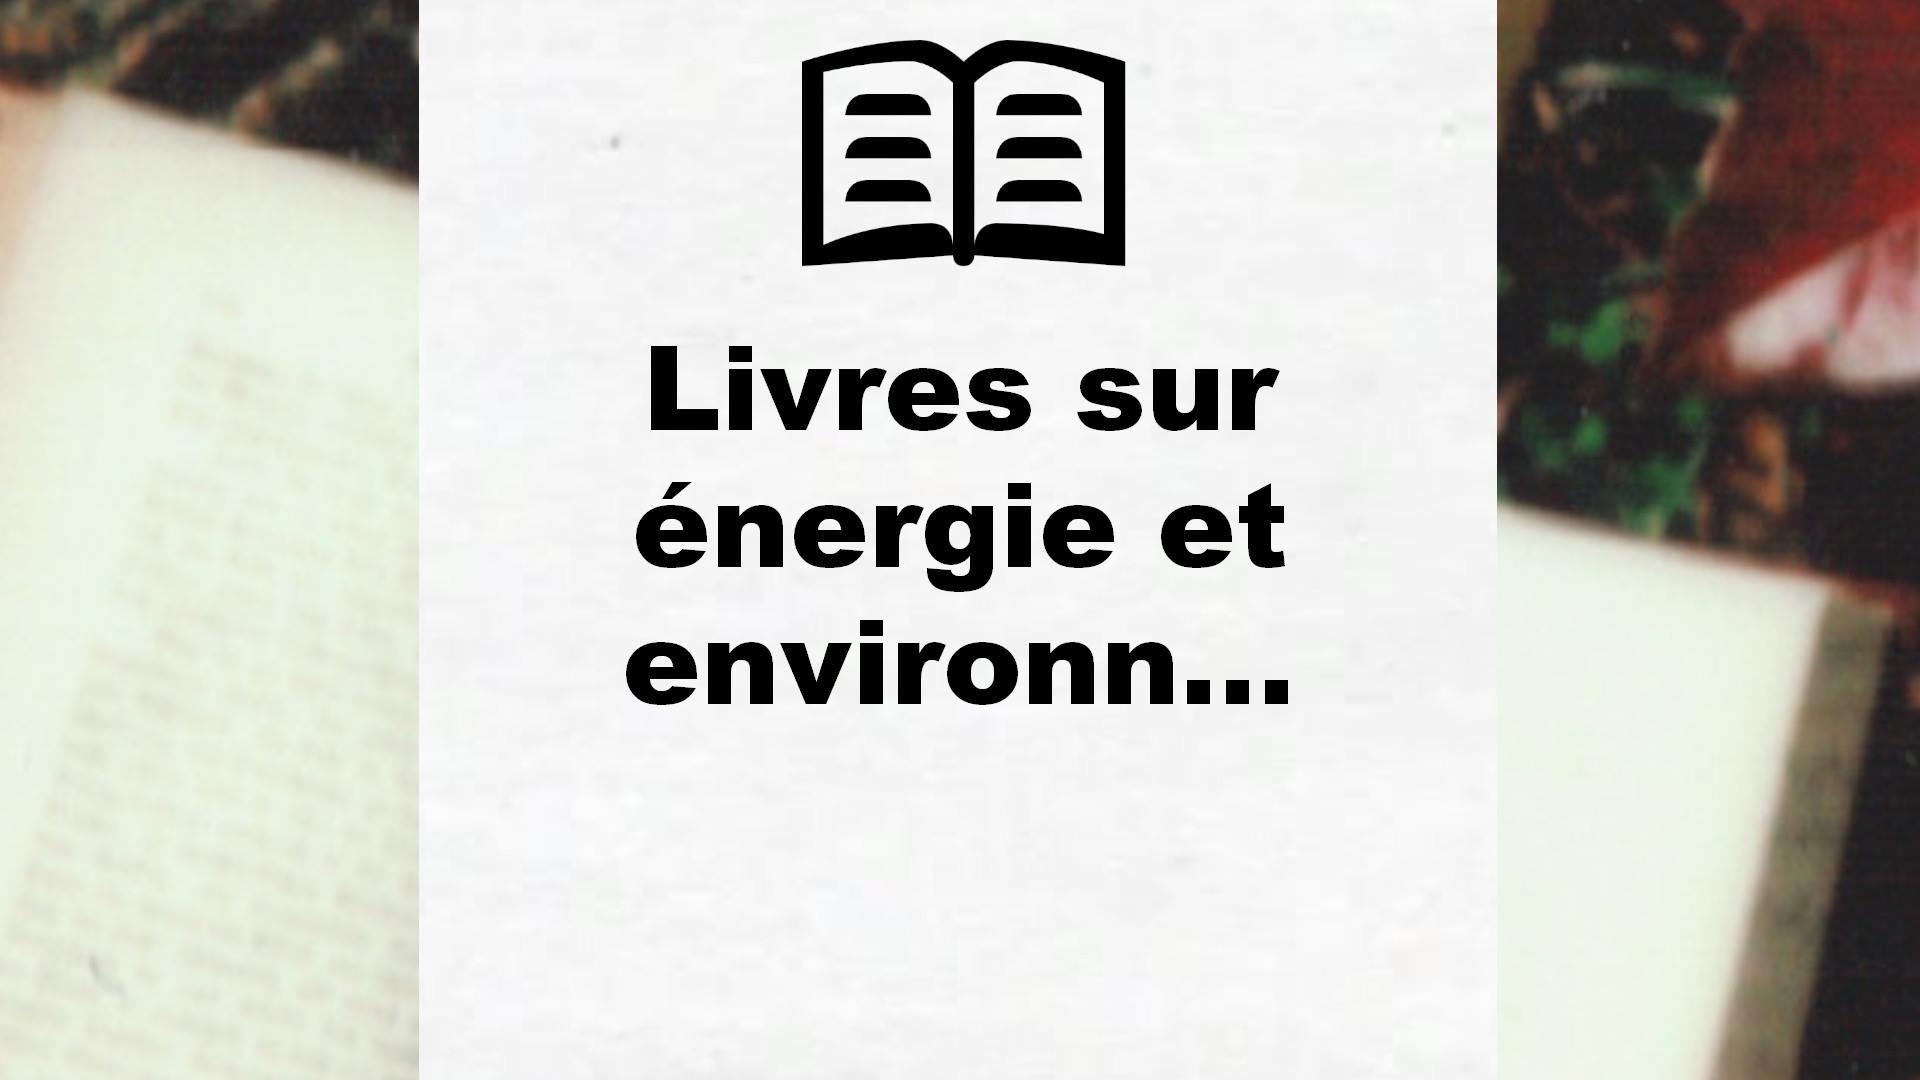 Livres sur énergie et environnement